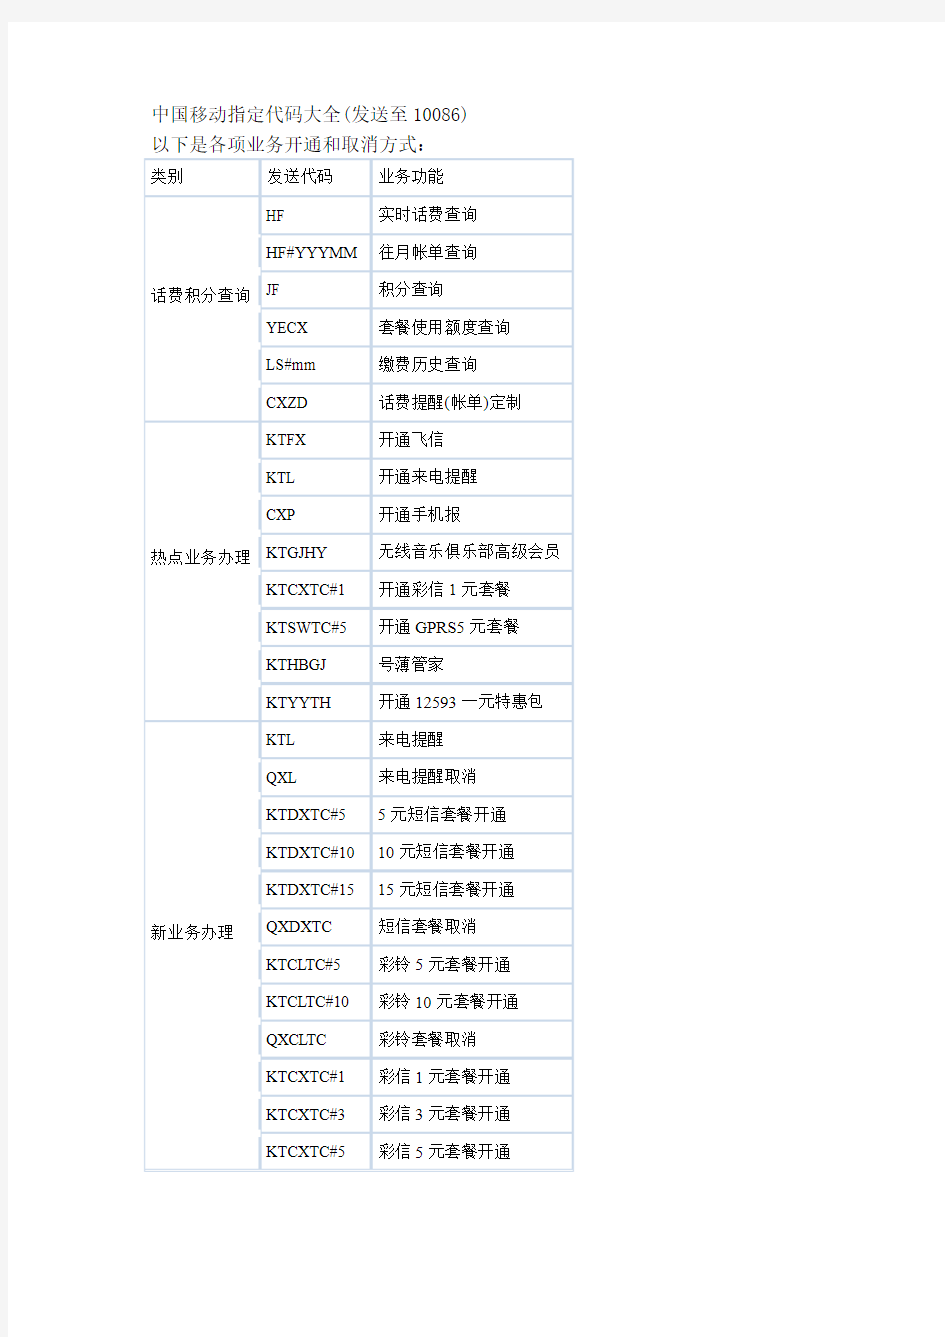 中国移动指定代码大全(发送至10086)